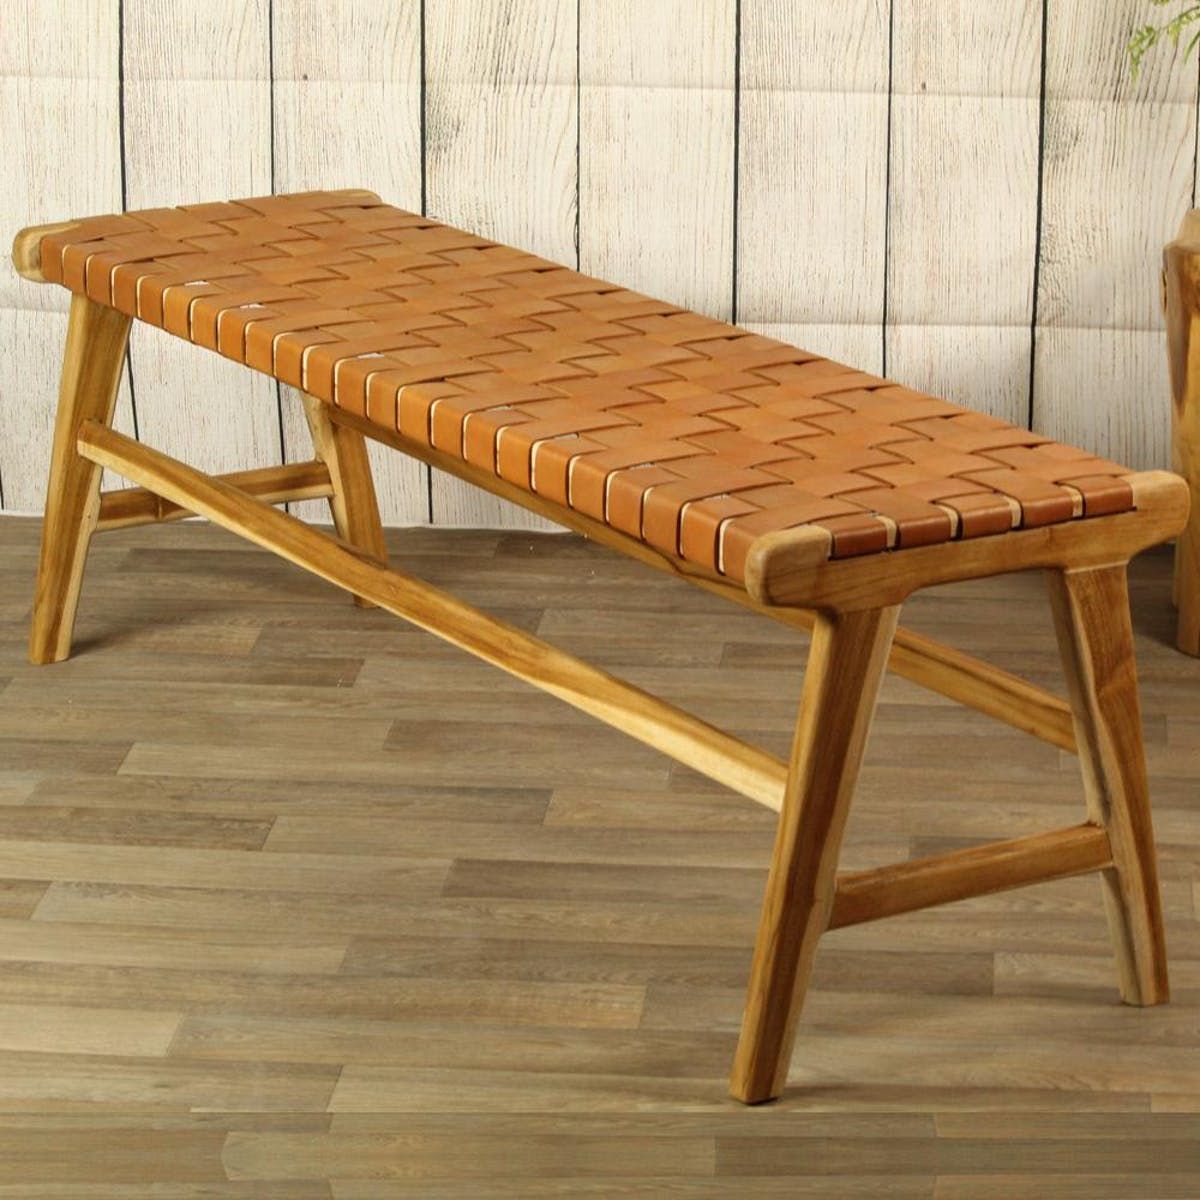 Teak wood dining bench